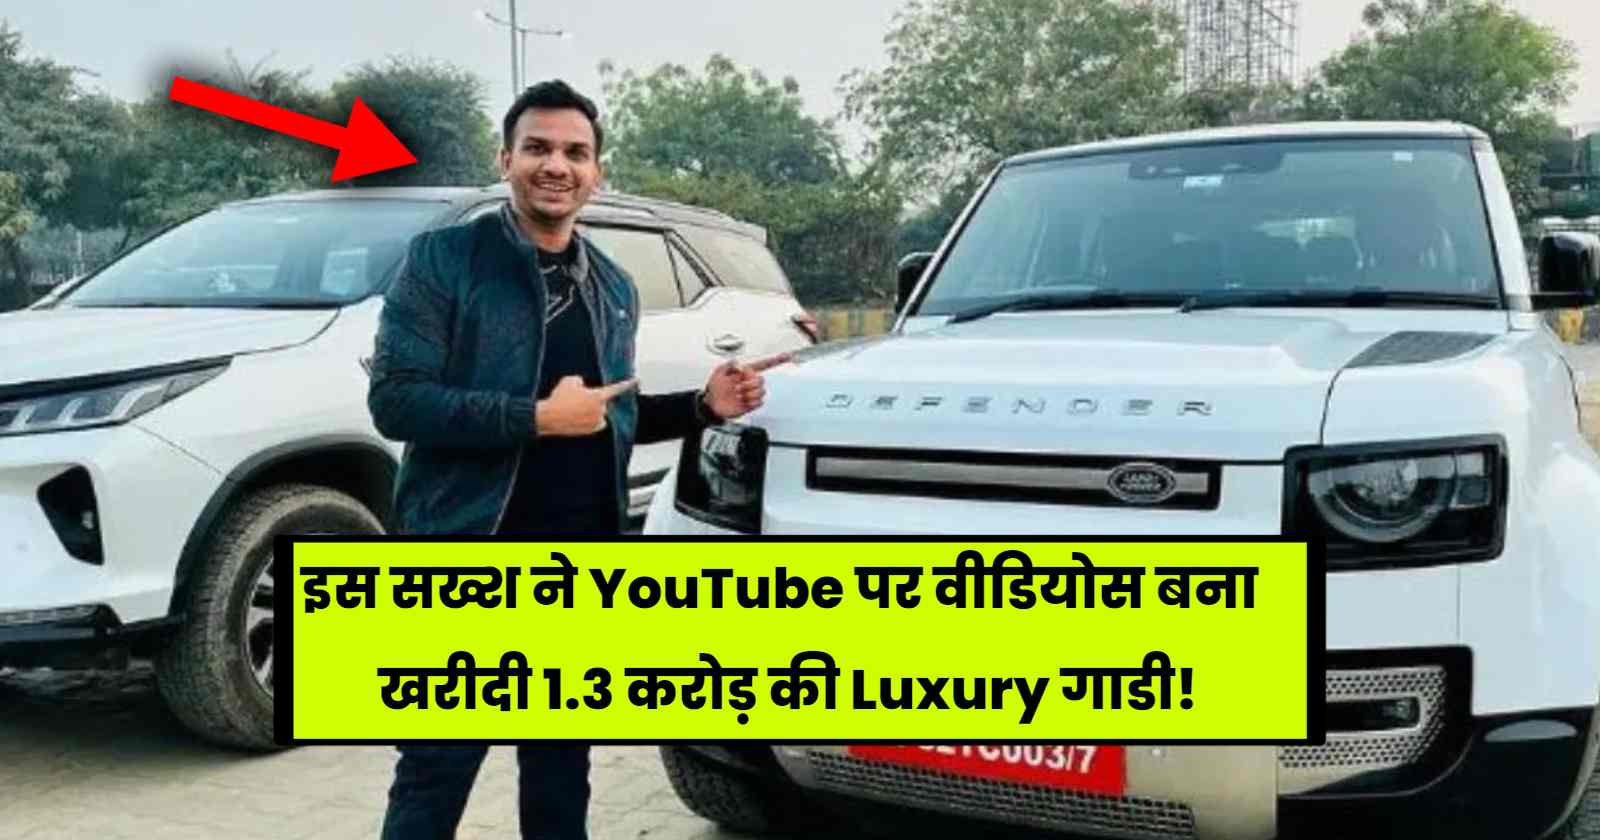 Satish K Videos New Car: इस सख्श ने YouTube पर वीडियोस बना खरीदी 1.3 करोड़ की Luxury गाडी